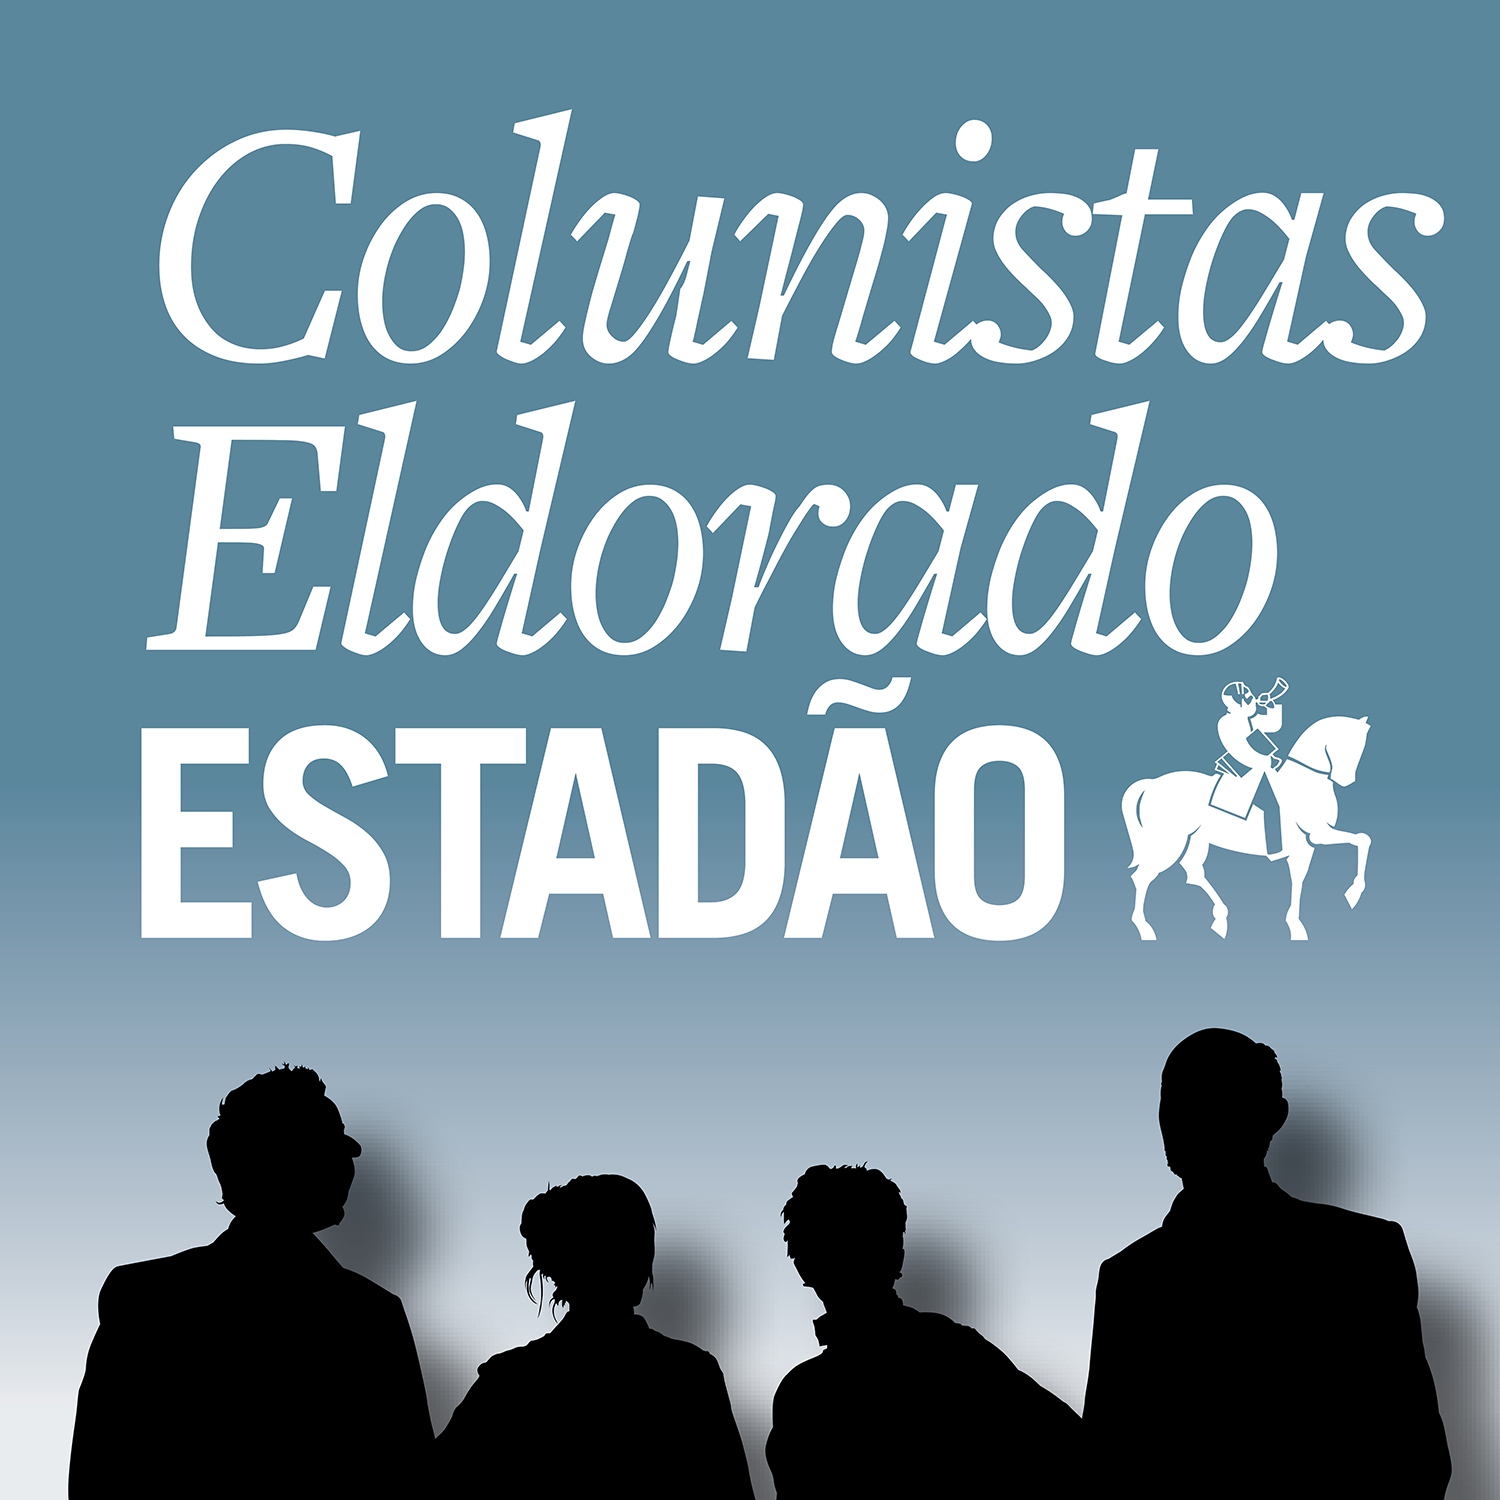 Coluna do Estadão: A popularidade em alta de Bolsonaro